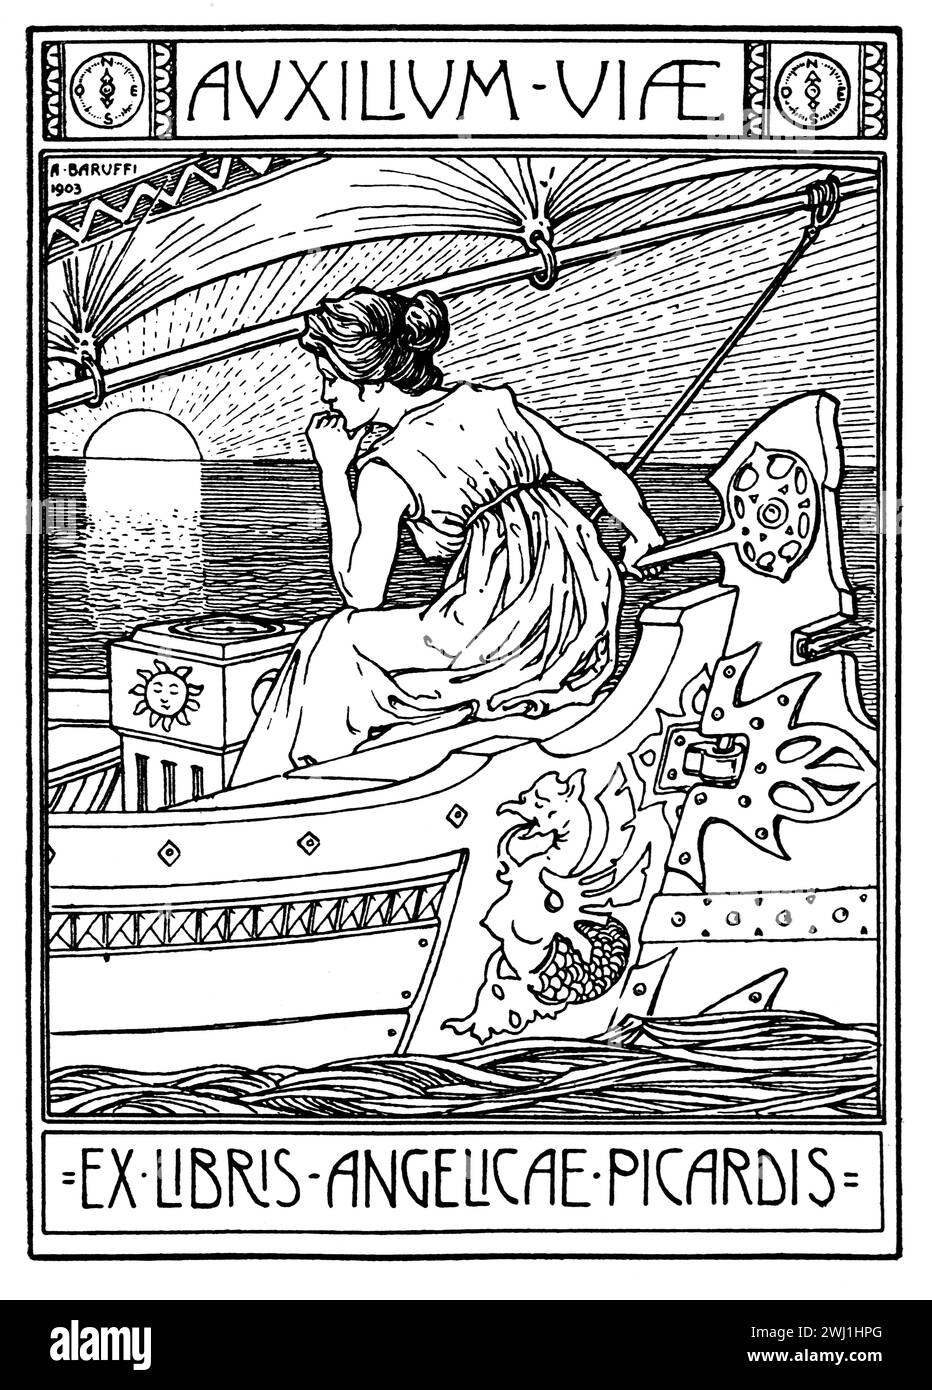 1903 plaque de livre auxiliaire viae, l'aide est en route, illustration pour Angelicae, Picardis par Bolognese, graphiste, Alfredo Baruffi Banque D'Images